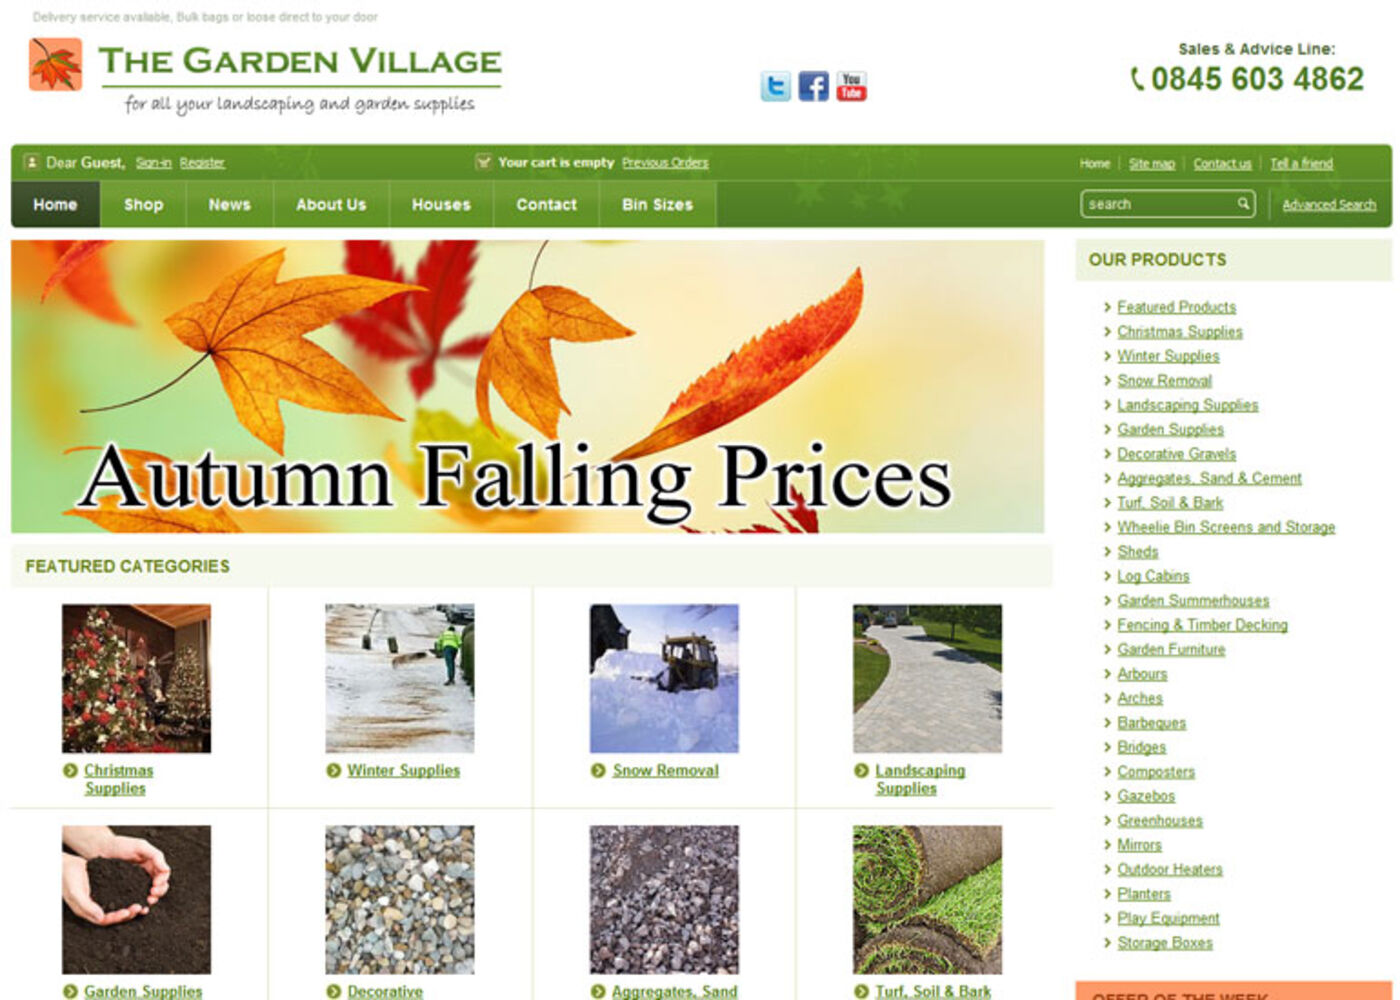 The Garden Village Homepage header